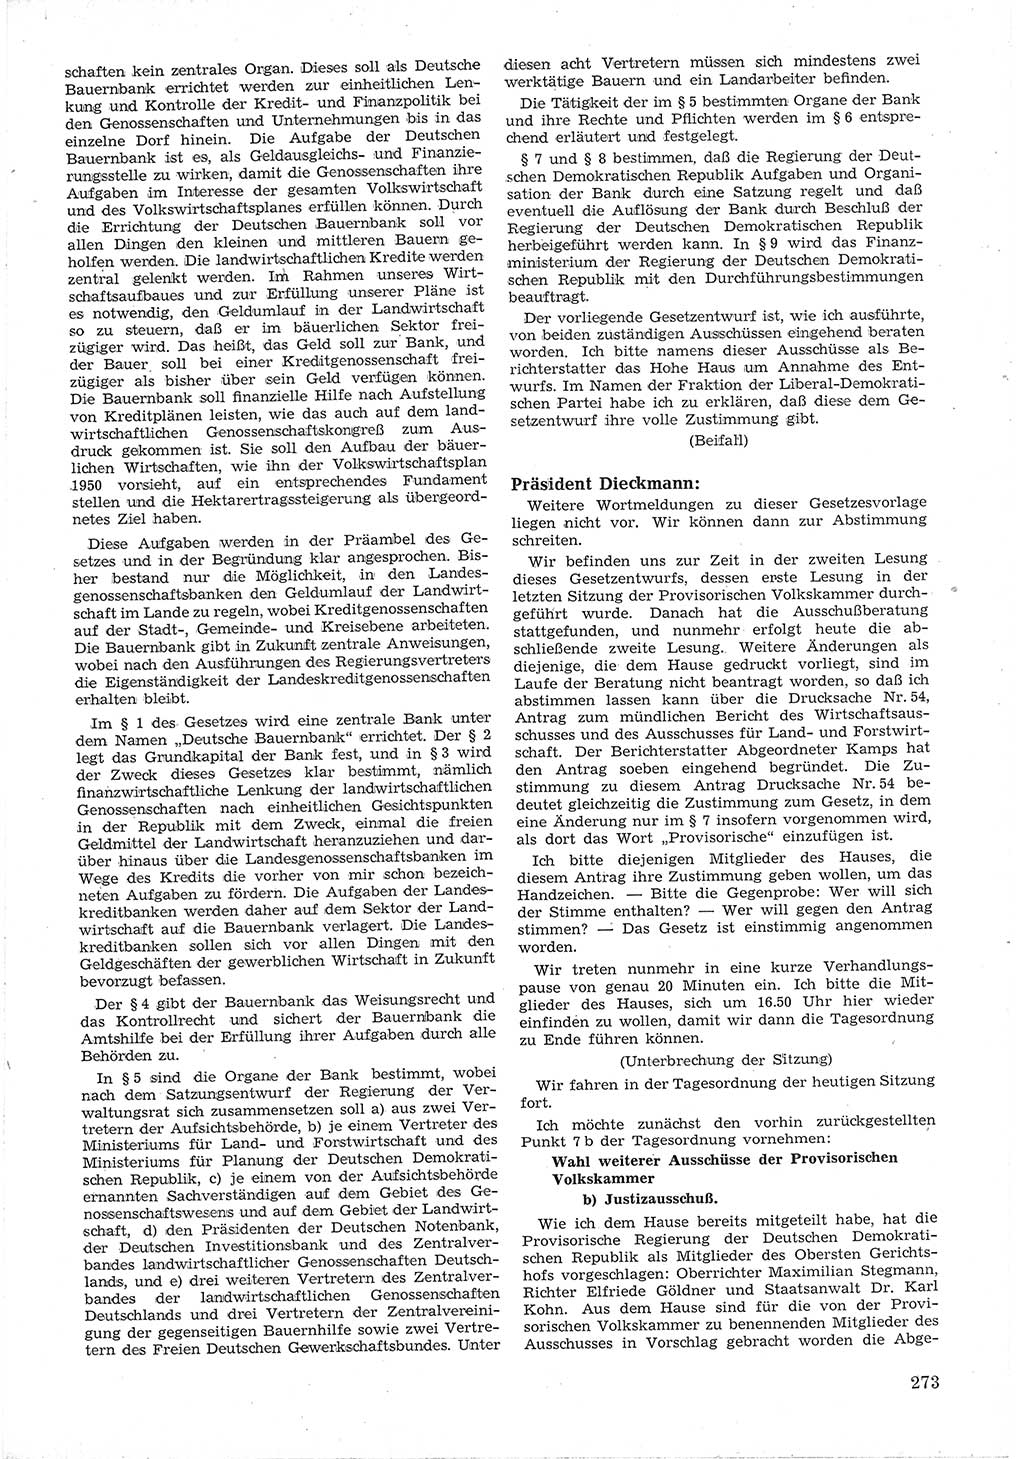 Provisorische Volkskammer (VK) der Deutschen Demokratischen Republik (DDR) 1949-1950, Dokument 287 (Prov. VK DDR 1949-1950, Dok. 287)